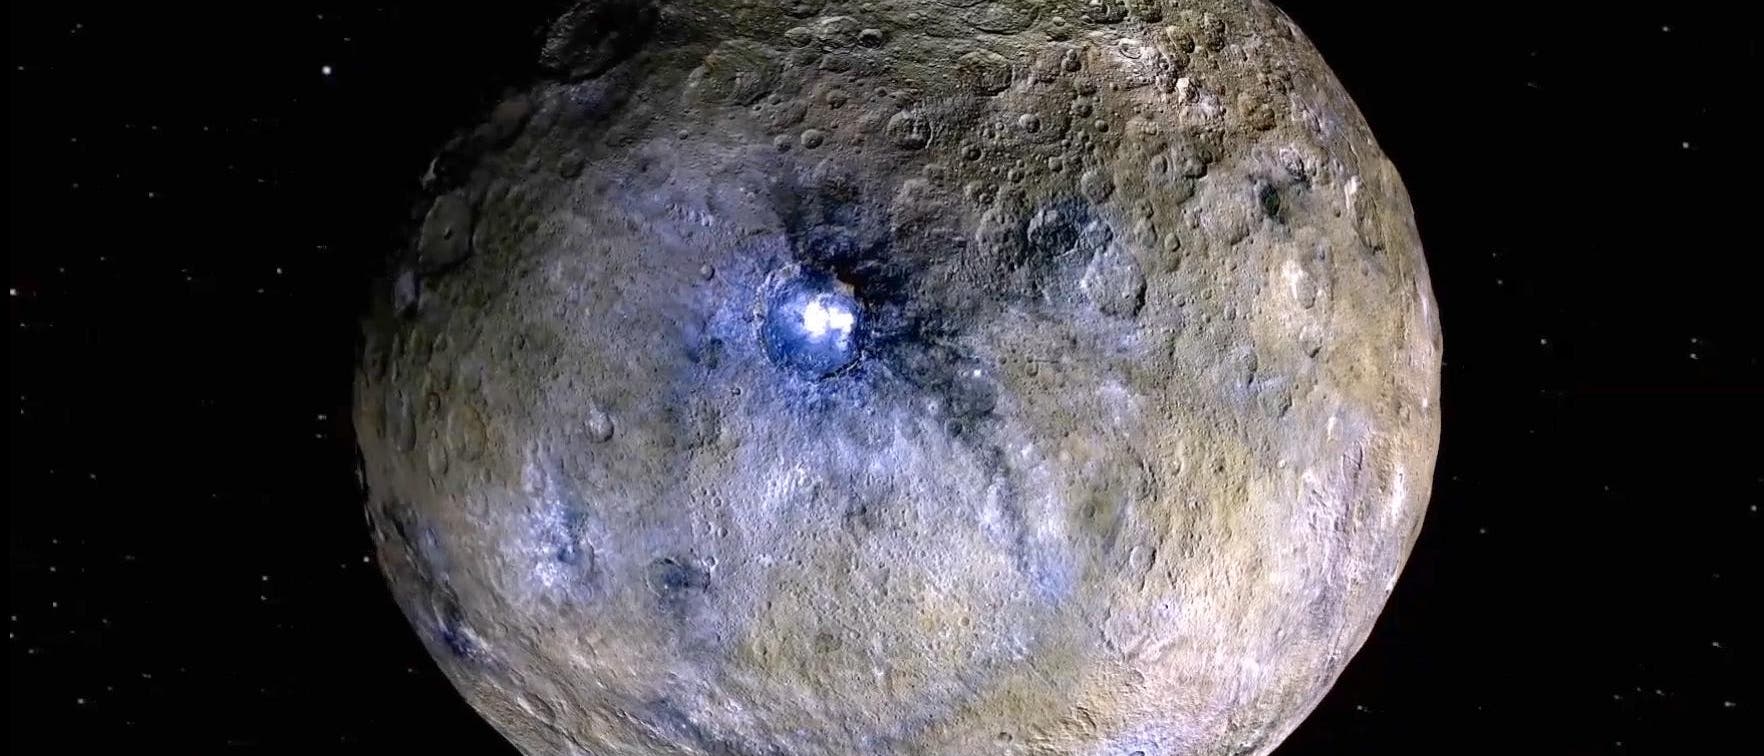 Ceres, eine ungewöhnliche Wasserwelt, mit dem Krater Occator